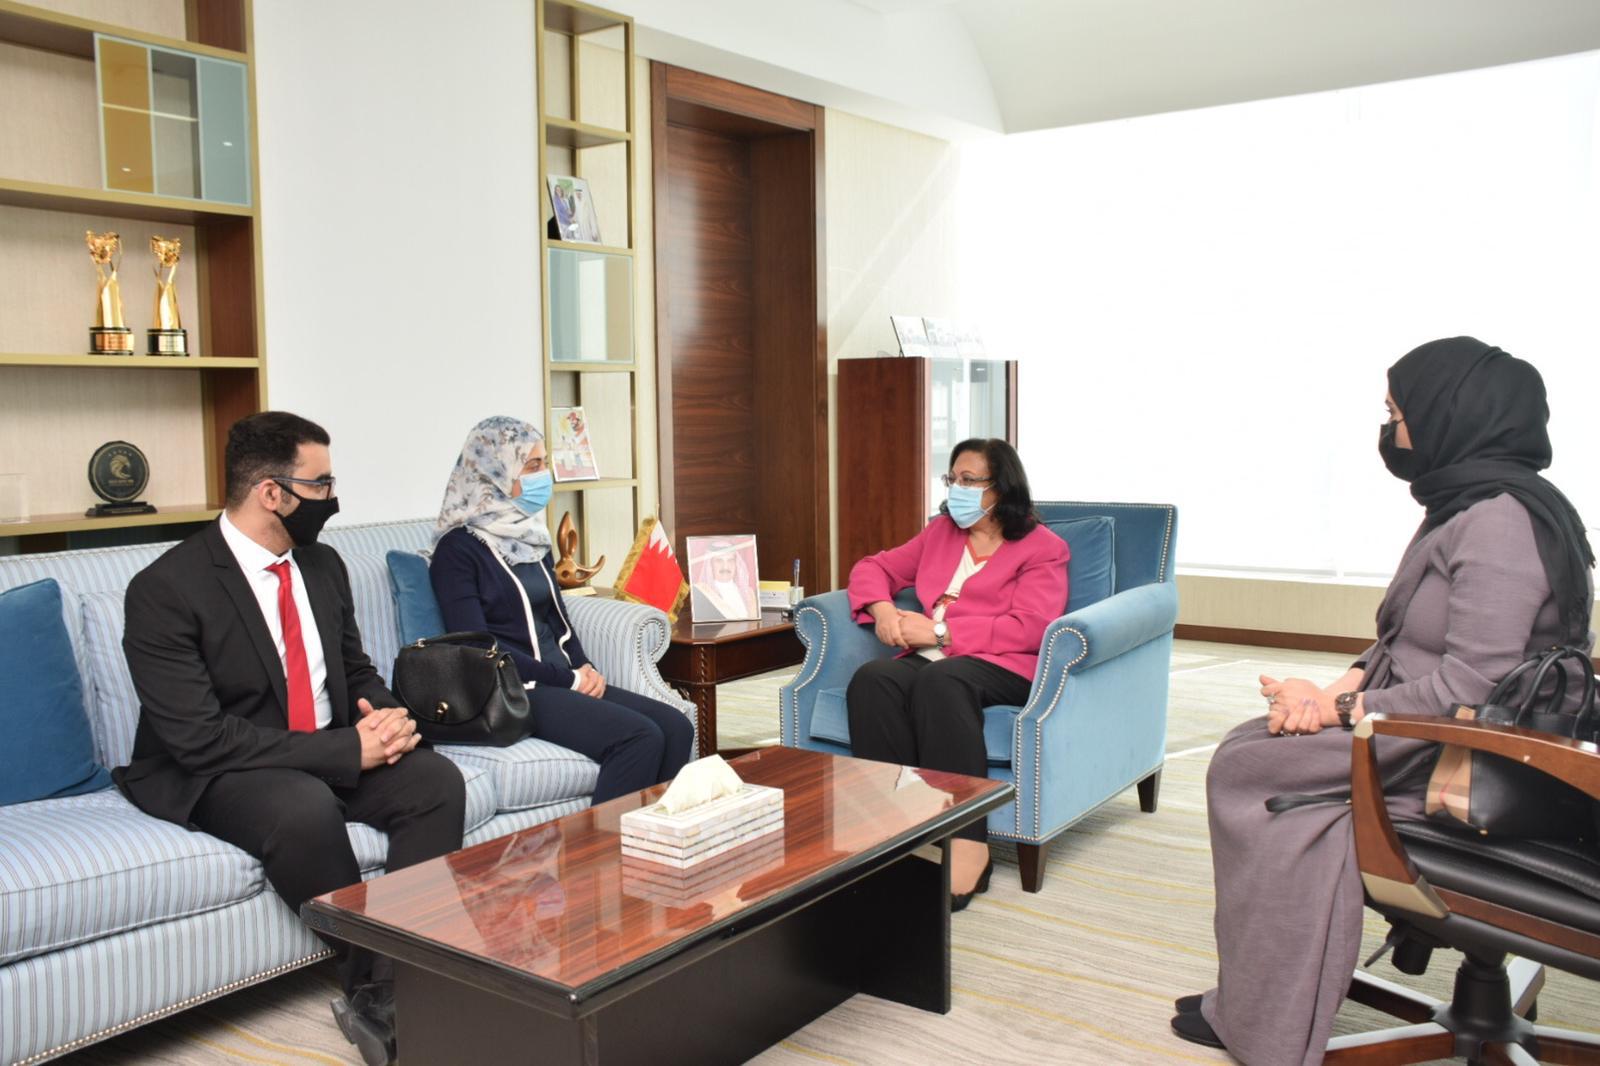 وزيرة الصحة تبارك فوز الطبيب البحريني بجائزة التميز لمشاريع الأطباء المقيمين للعام 2020 